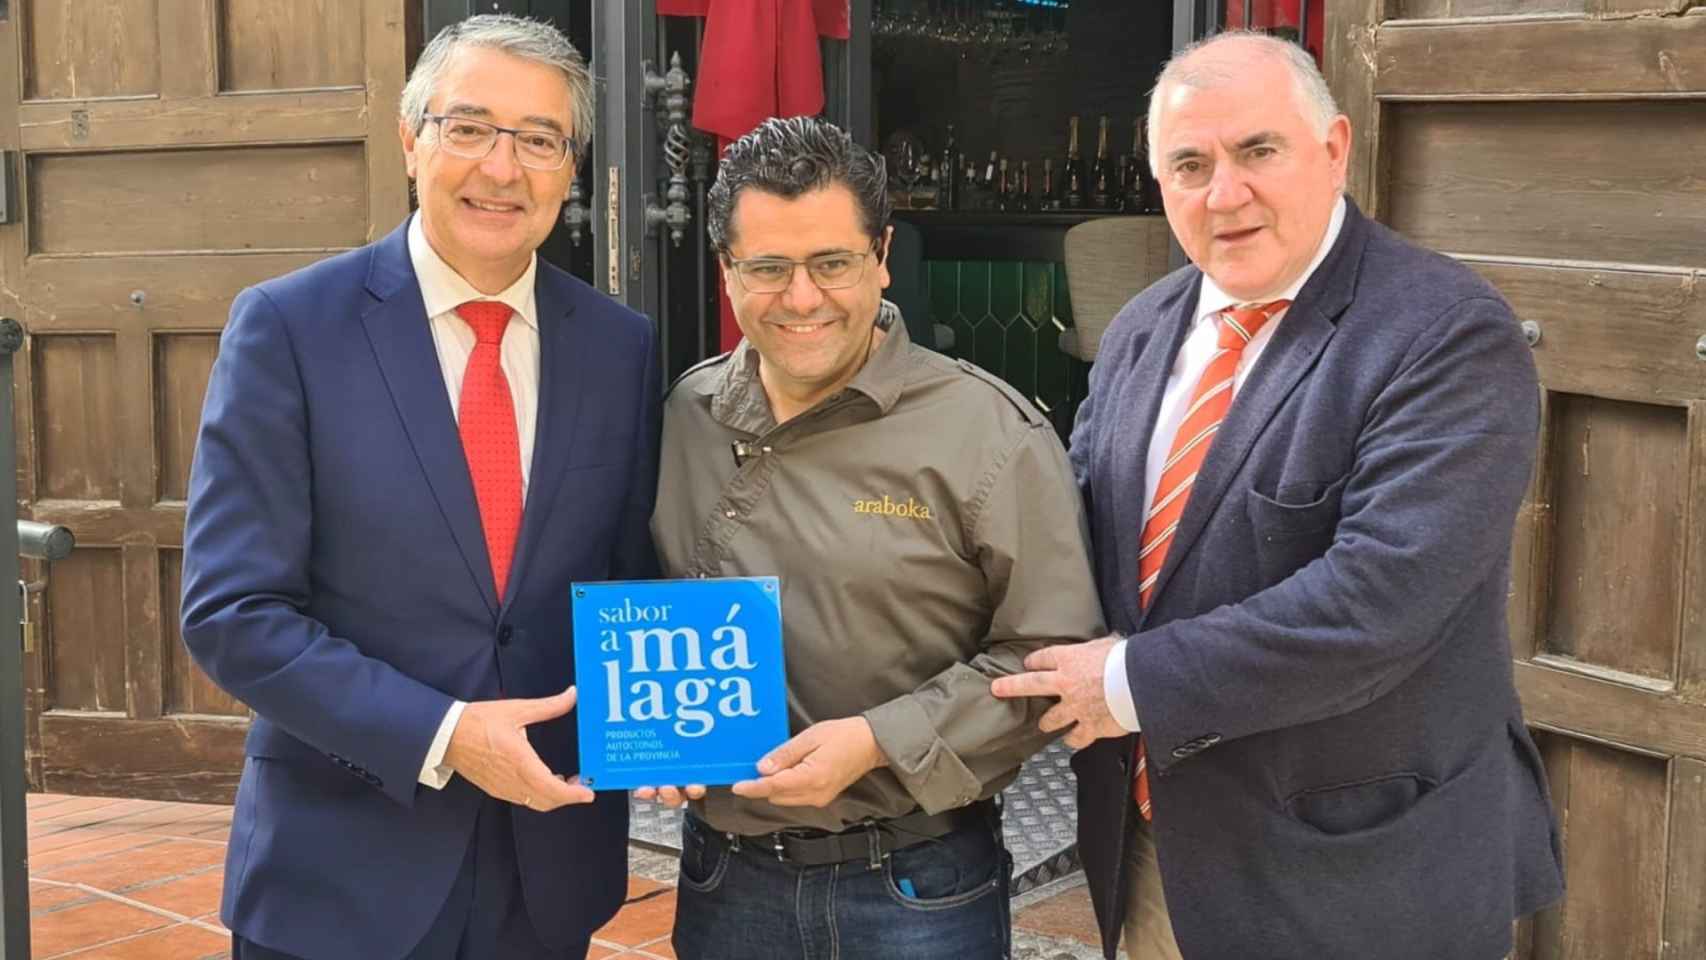 El presidente de la Diputación de Málaga, Francisco Salado, entrega el distintivo 'Sabor a Málaga' al restaurante Araboka Plaza